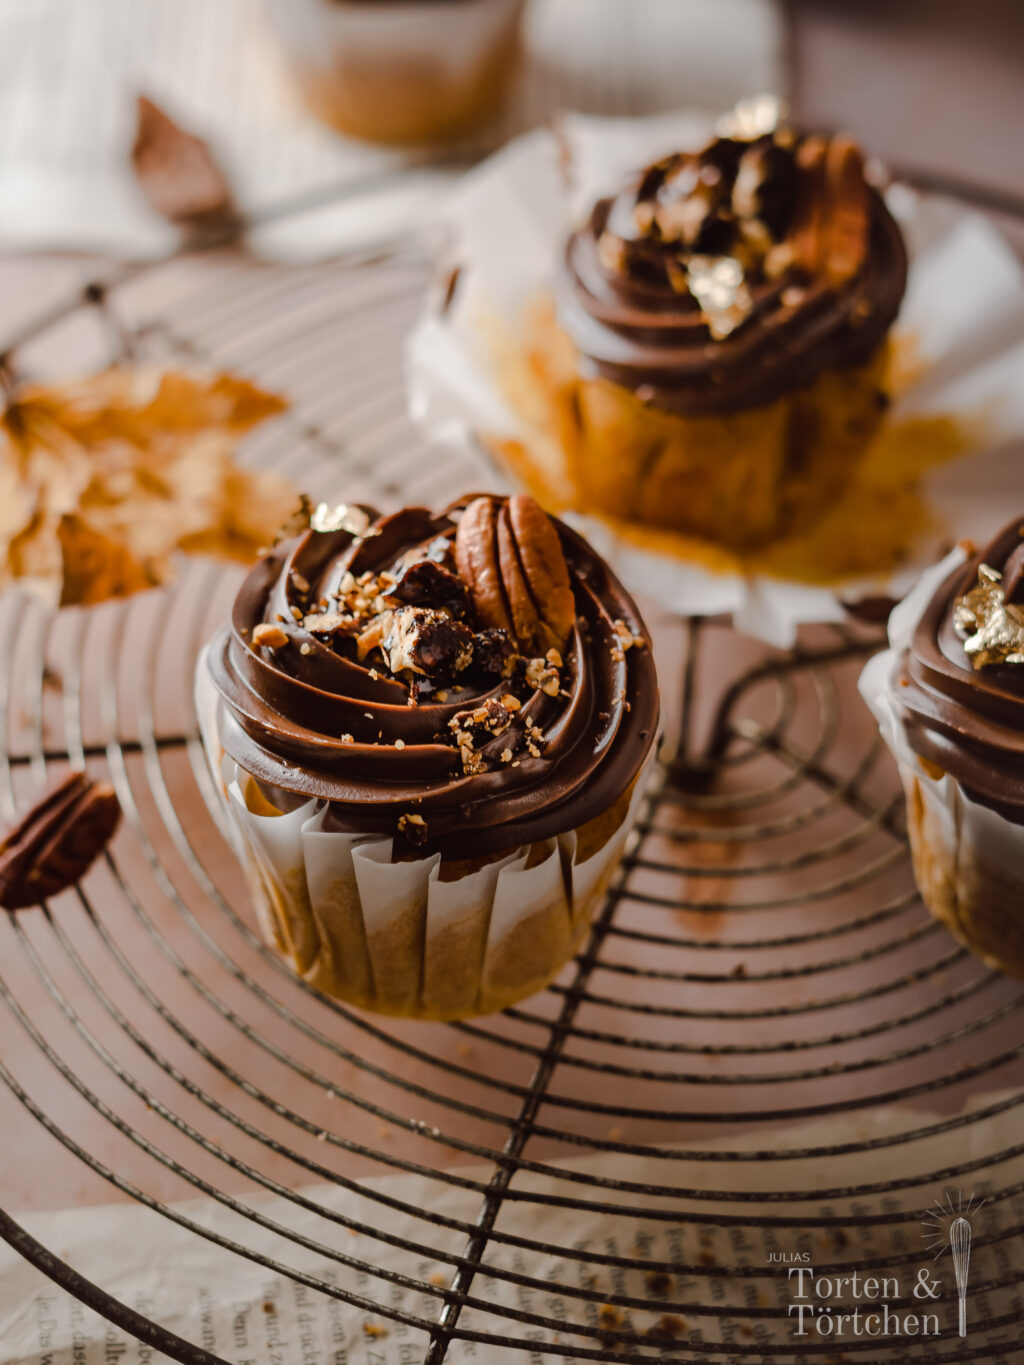 Ein einfaches Rezept für herbstliche Pumpkin Spice Cupcakes mit gebrannten Pekannüssen. Die karamellisierten Nüsse auf einer reichen Schokoadencreme passen einfach so gut zu dem gewürzten saftigen Kürbismuffin! #Pumpkinspice #backen #Rezept #Kürbis #Herbstrezepte #Nüsse #Muffins #Cupcakes